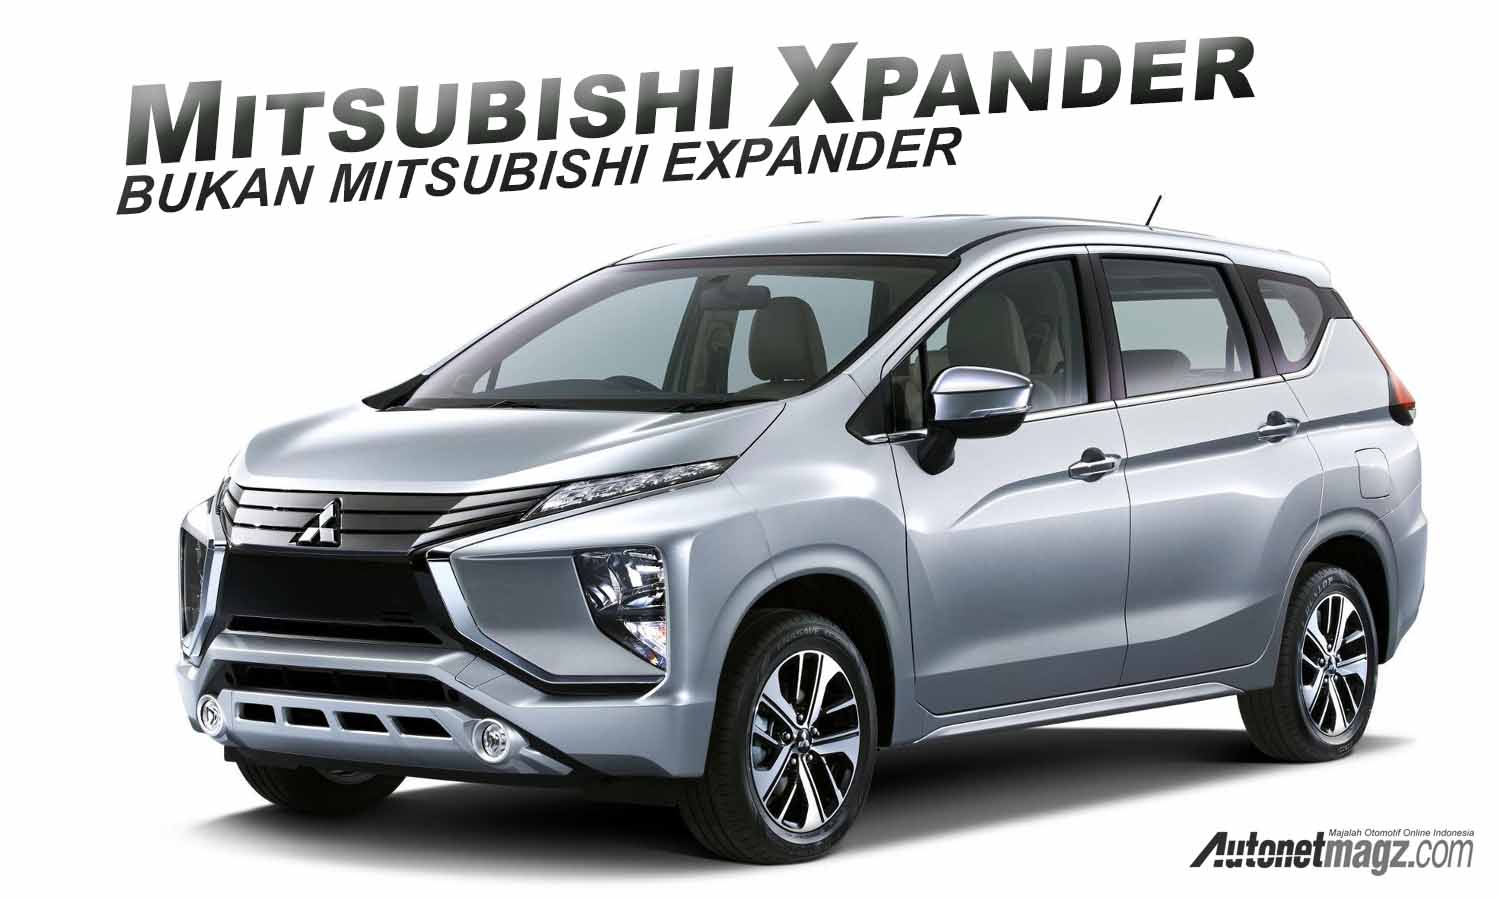 Mitsubishi Xpander, Inilah Nama Resminya! Bukan Expander!